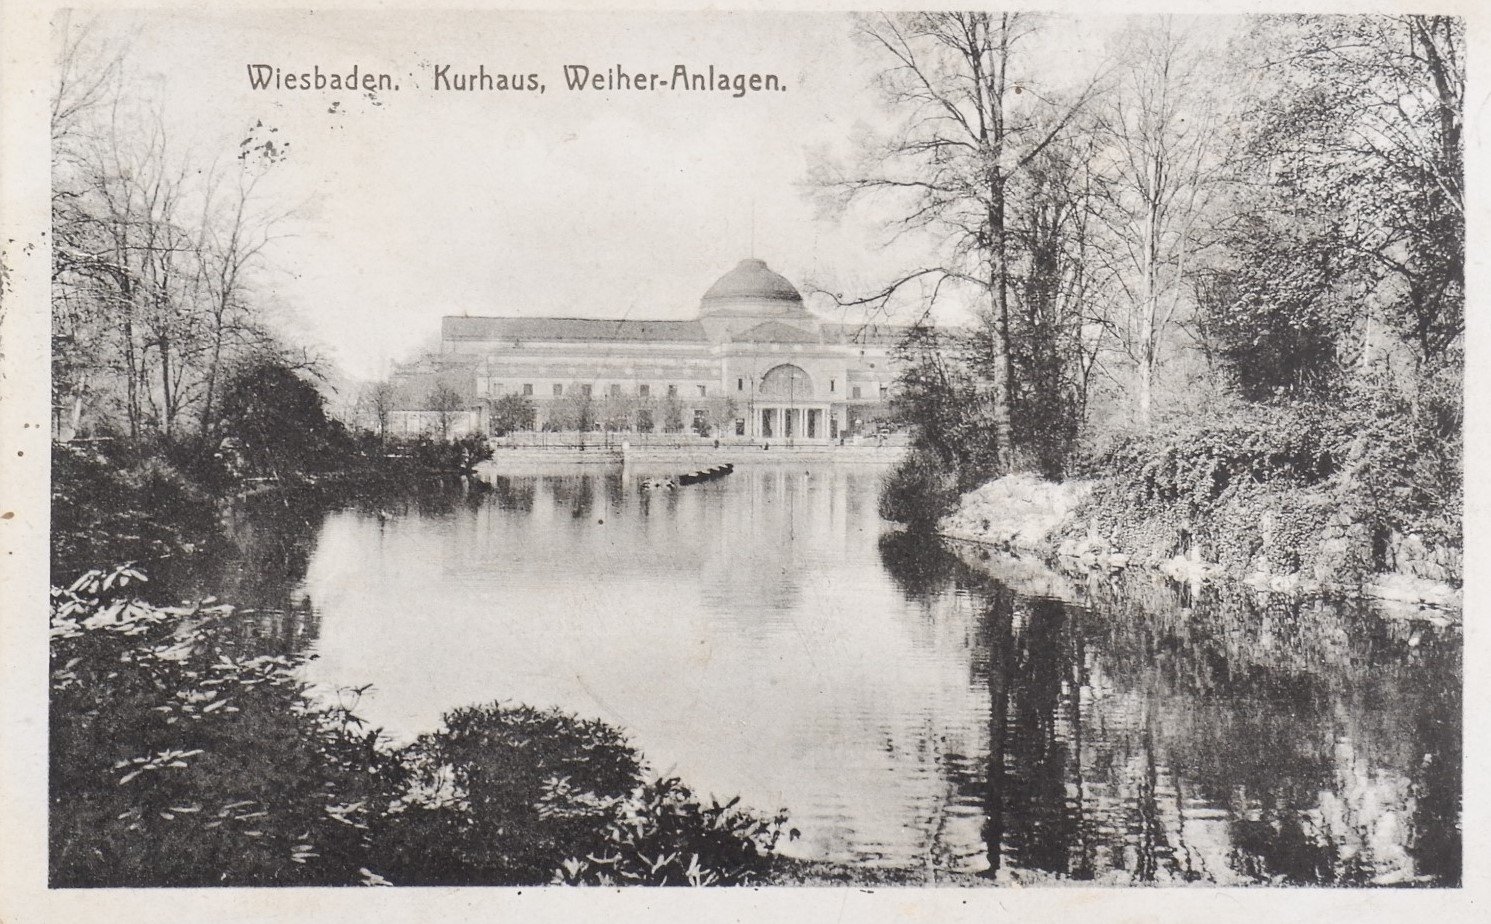 Postkarte: Kurhaus, Weiher-Anlage (Wiesbaden) (Volkskunde- und Freilichtmuseum Roscheider Hof RR-F)